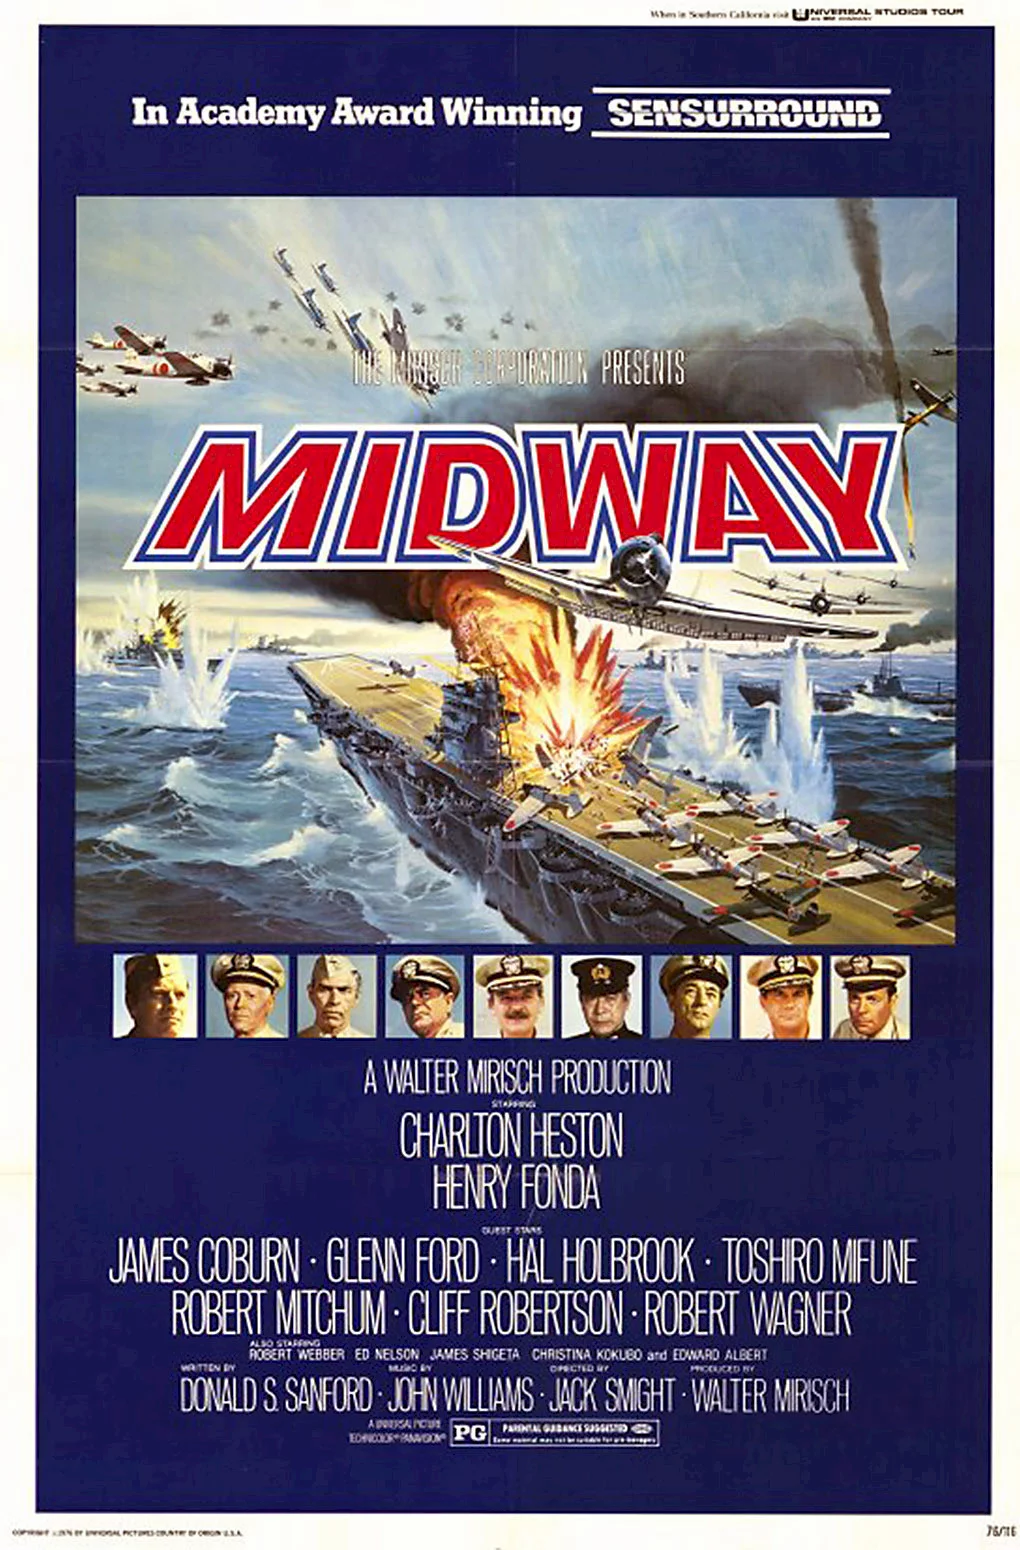 Photo 1 du film : La bataille de midway